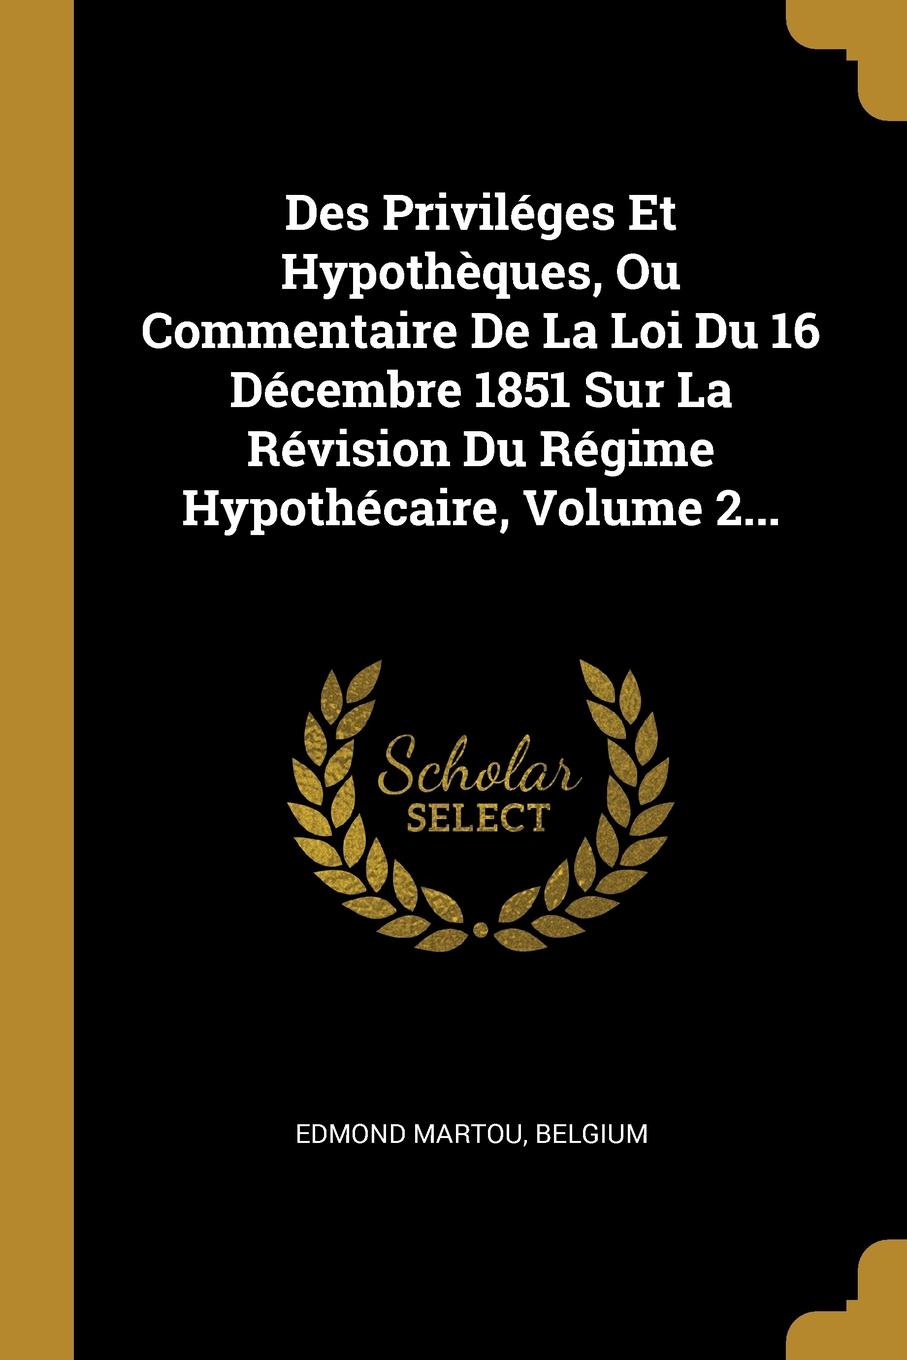 Des Privileges Et Hypotheques, Ou Commentaire De La Loi Du 16 Decembre 1851 Sur La Revision Du Regime Hypothecaire, Volume 2...